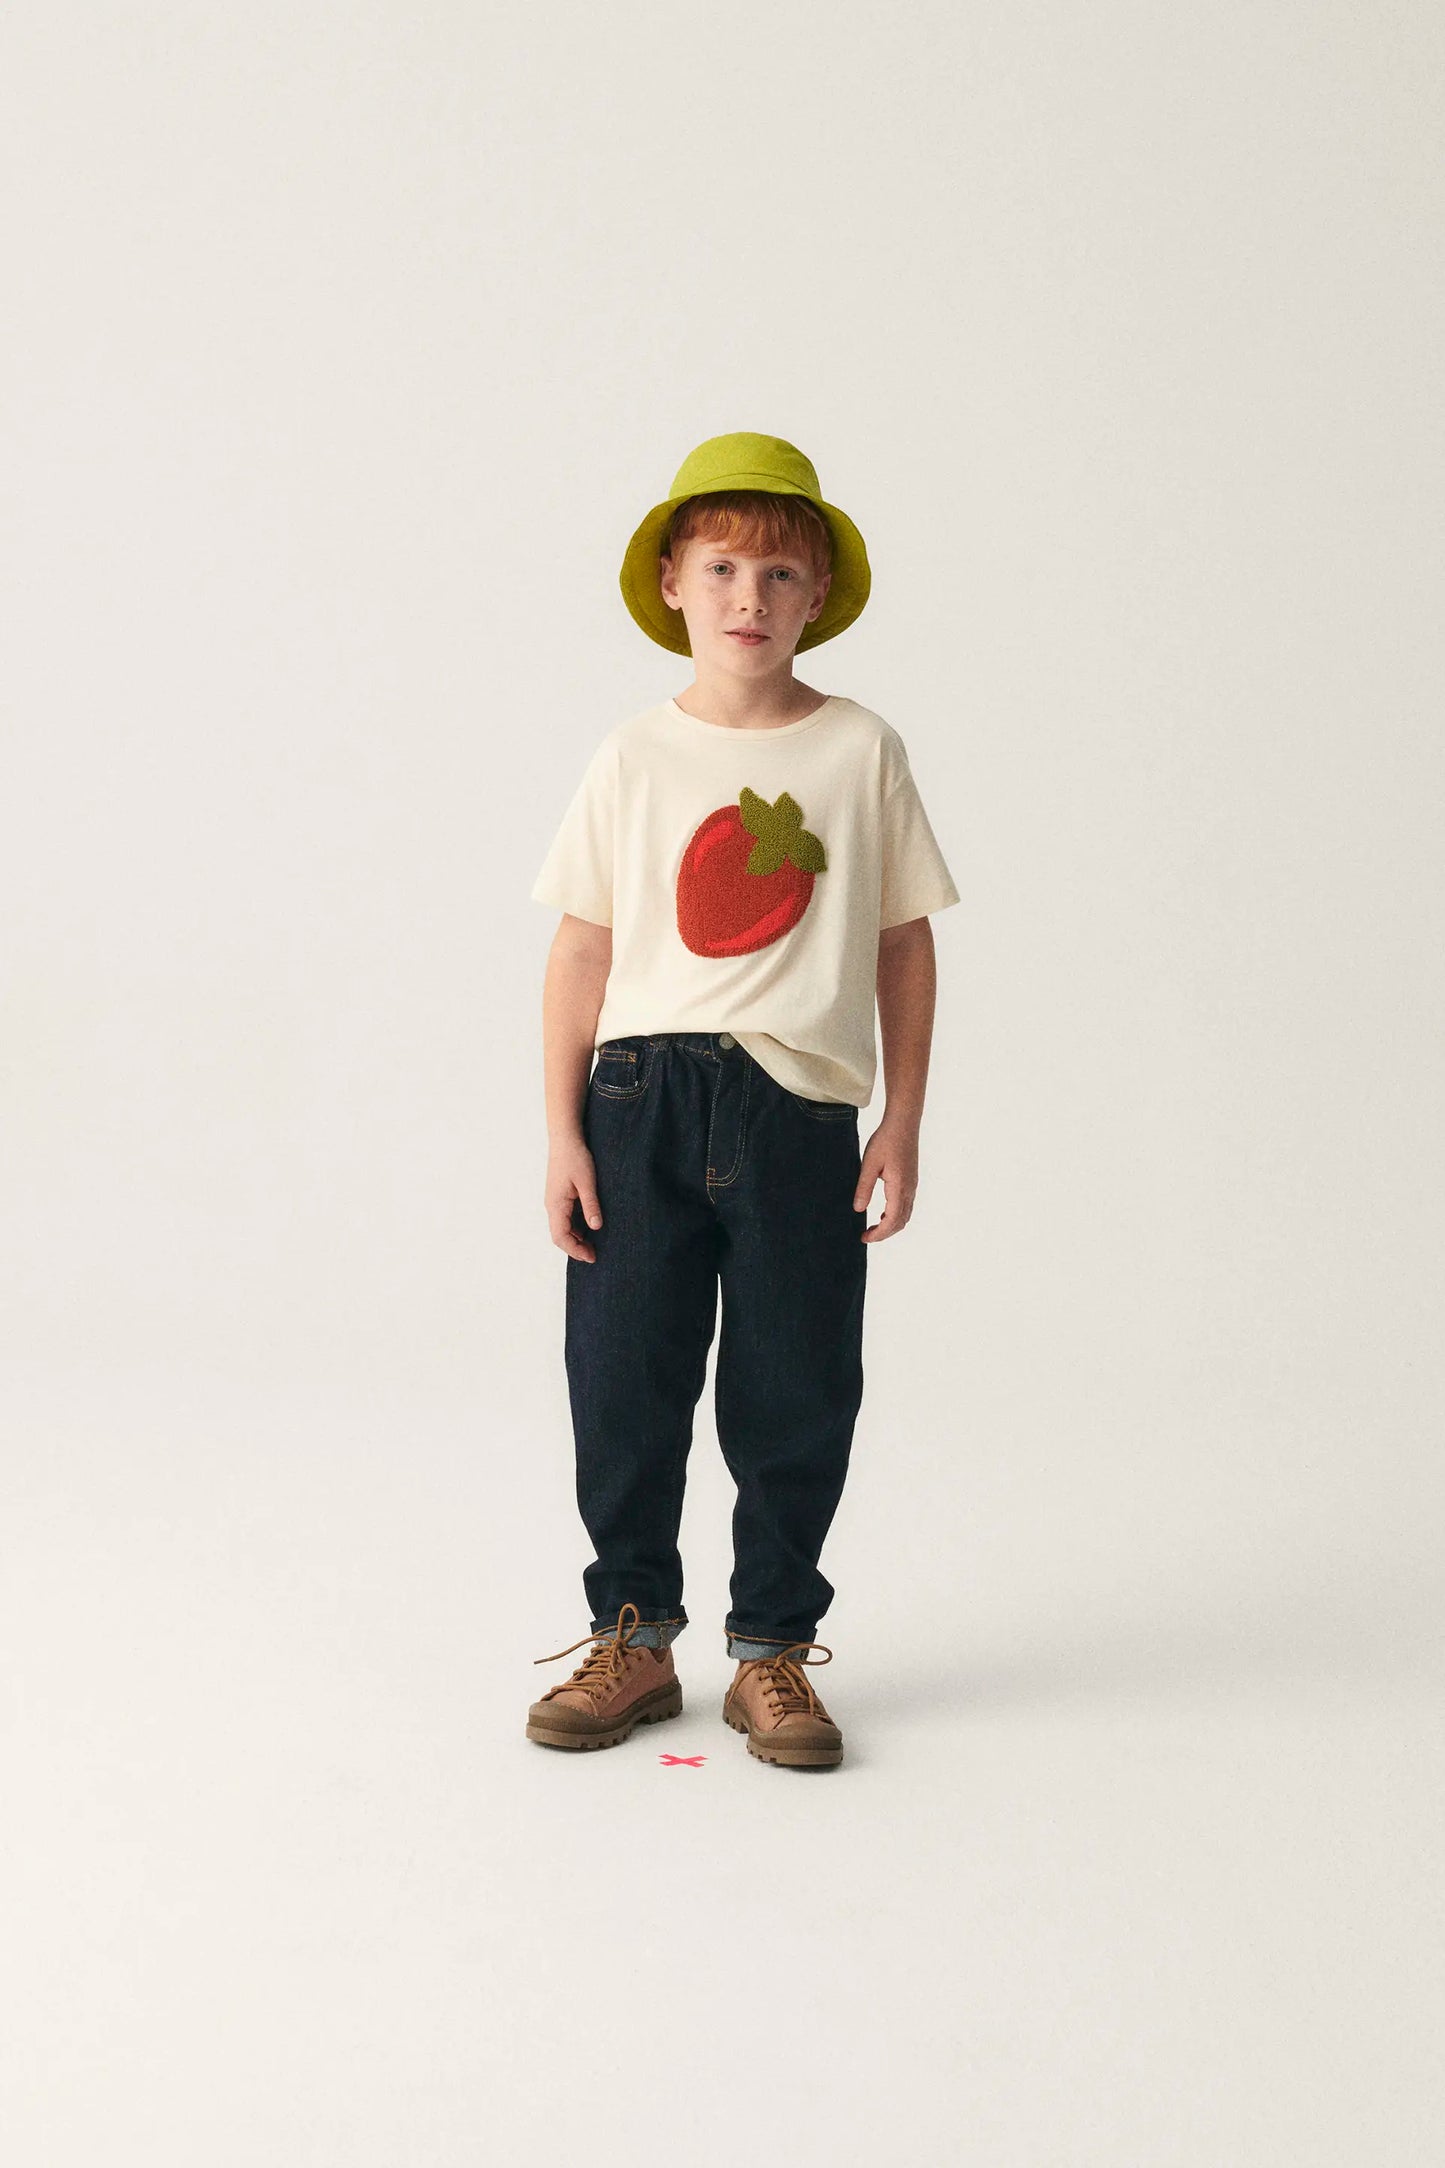 Camiseta unisex de algodón con gráfica de caqui